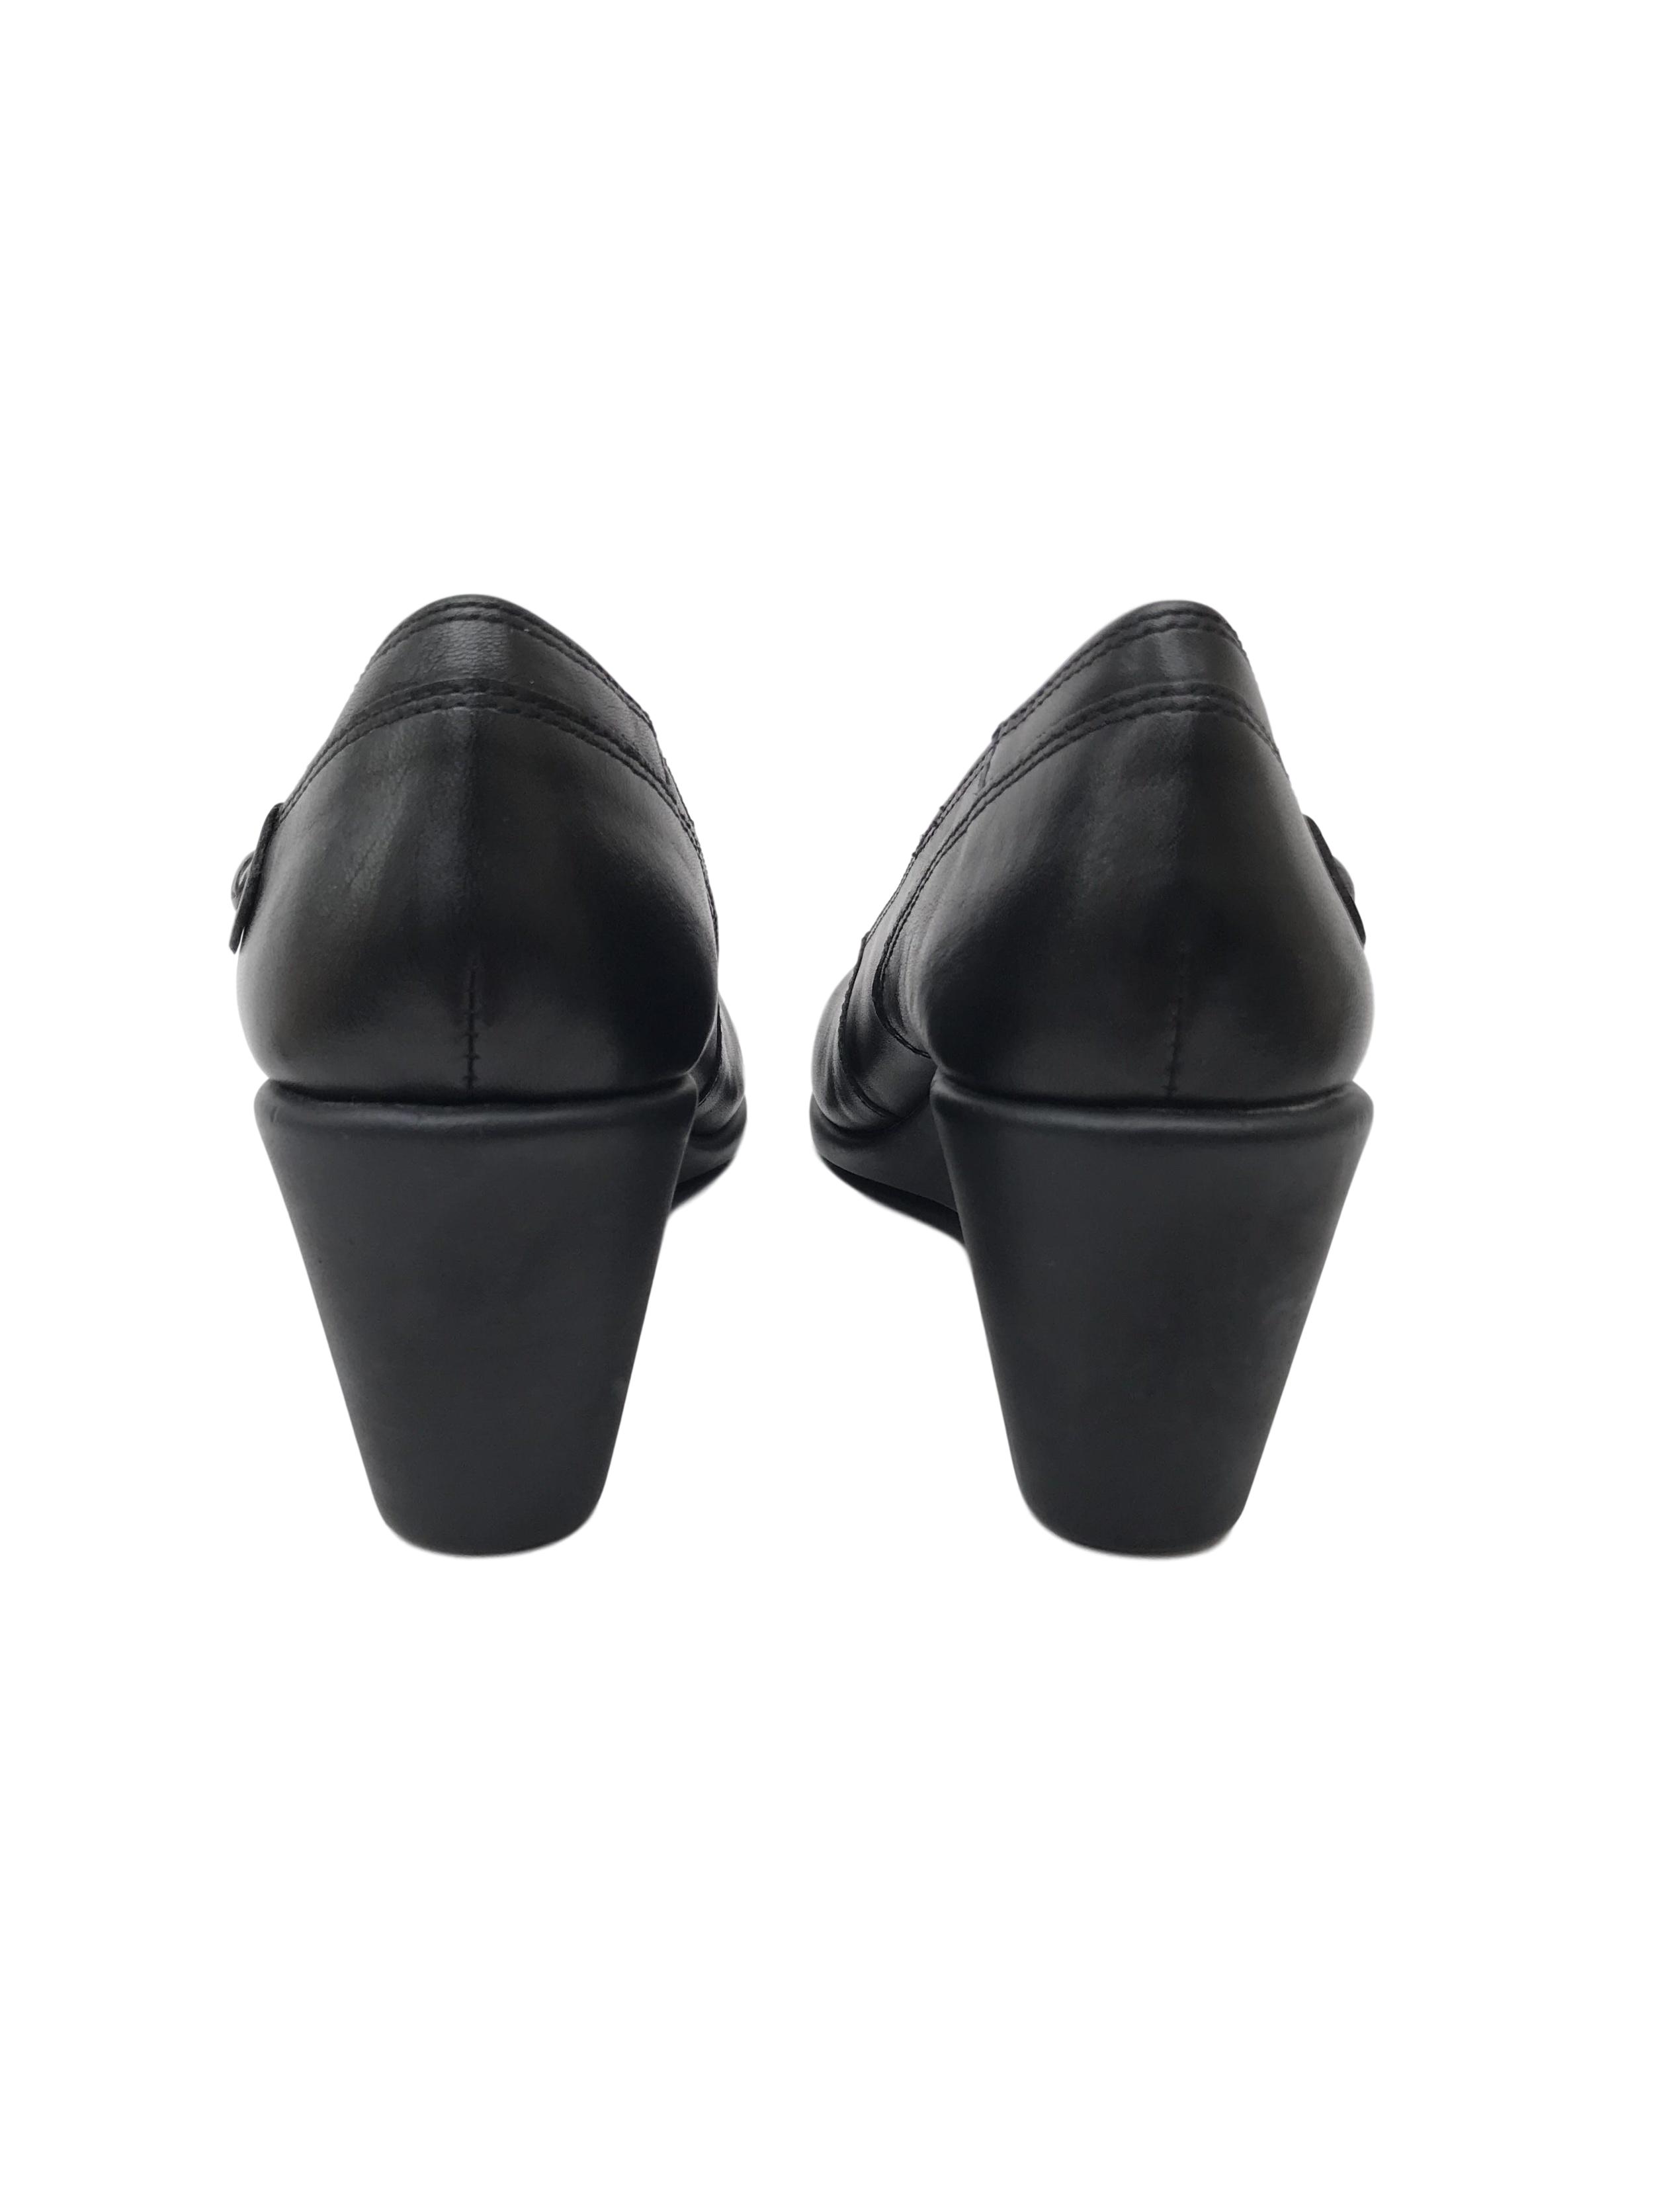 Zapatos Hush Puppies de cuero negro, taco cuña 7cm, comfort flex. Estado 9/10. Precio original S/ 250